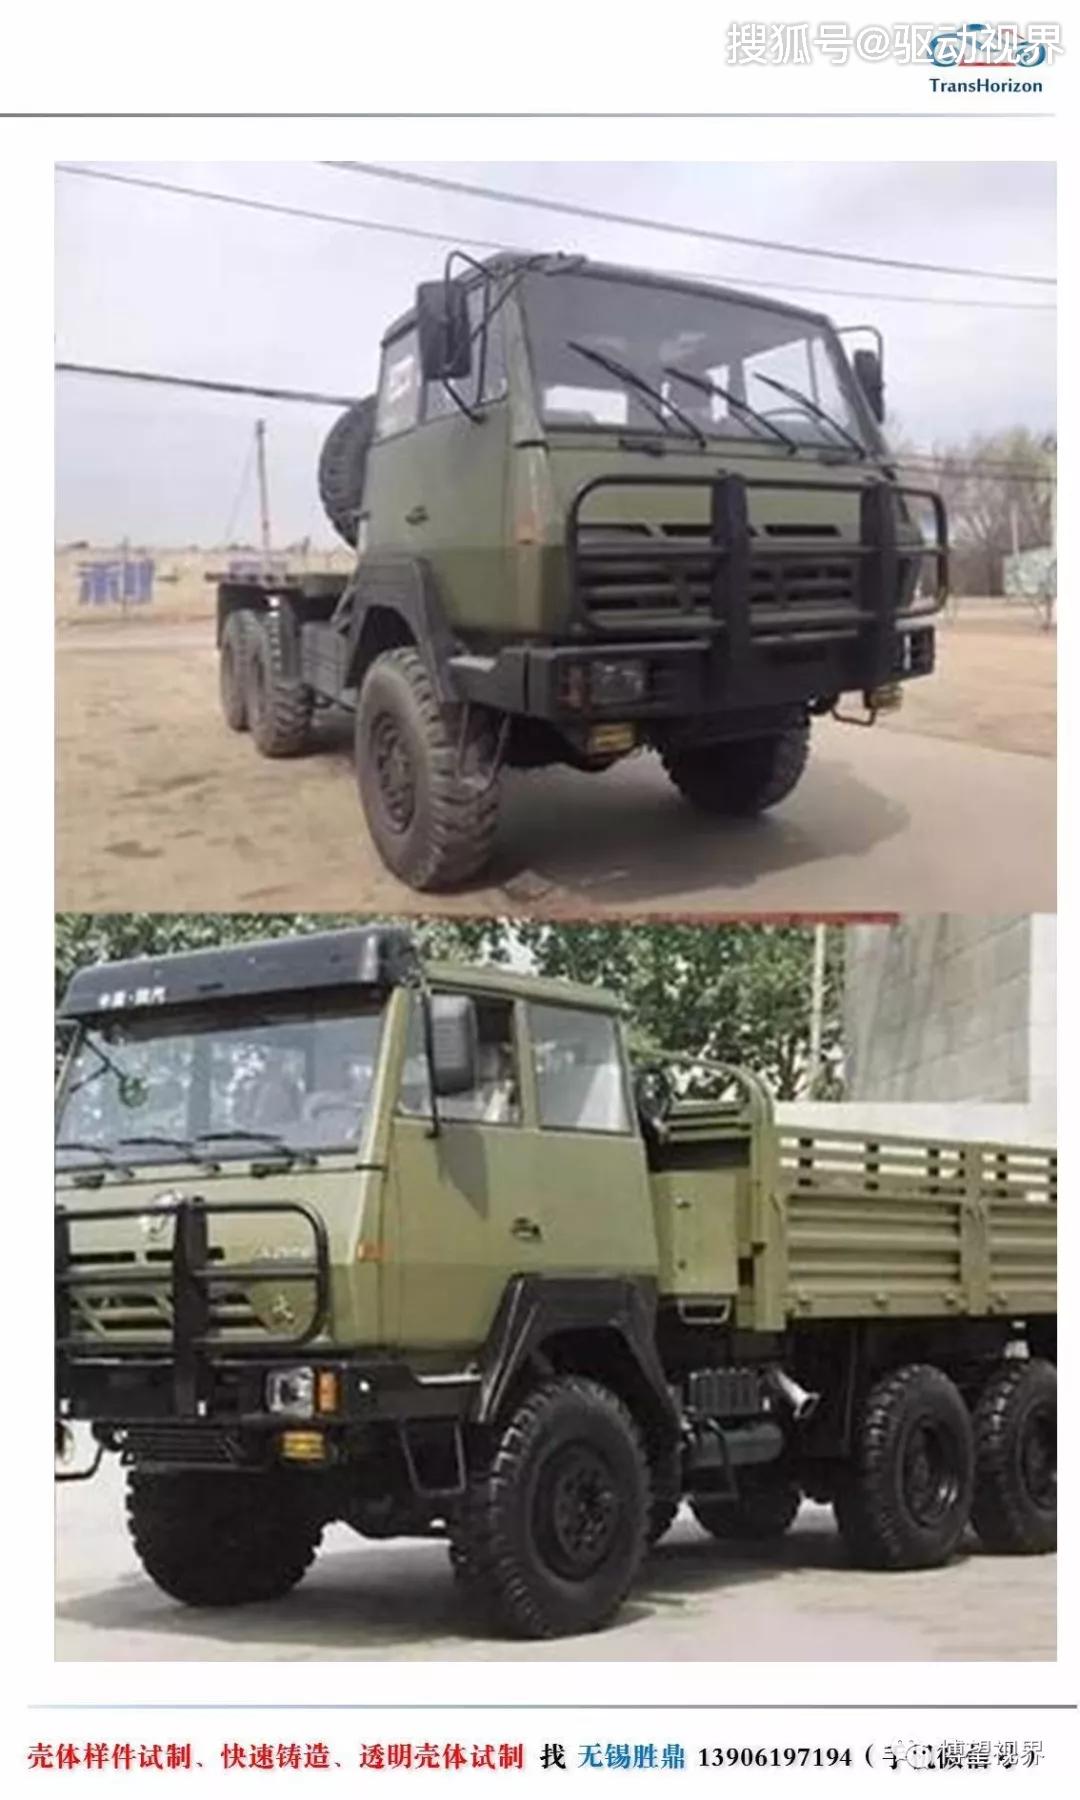 中国重型军用越野卡车历史